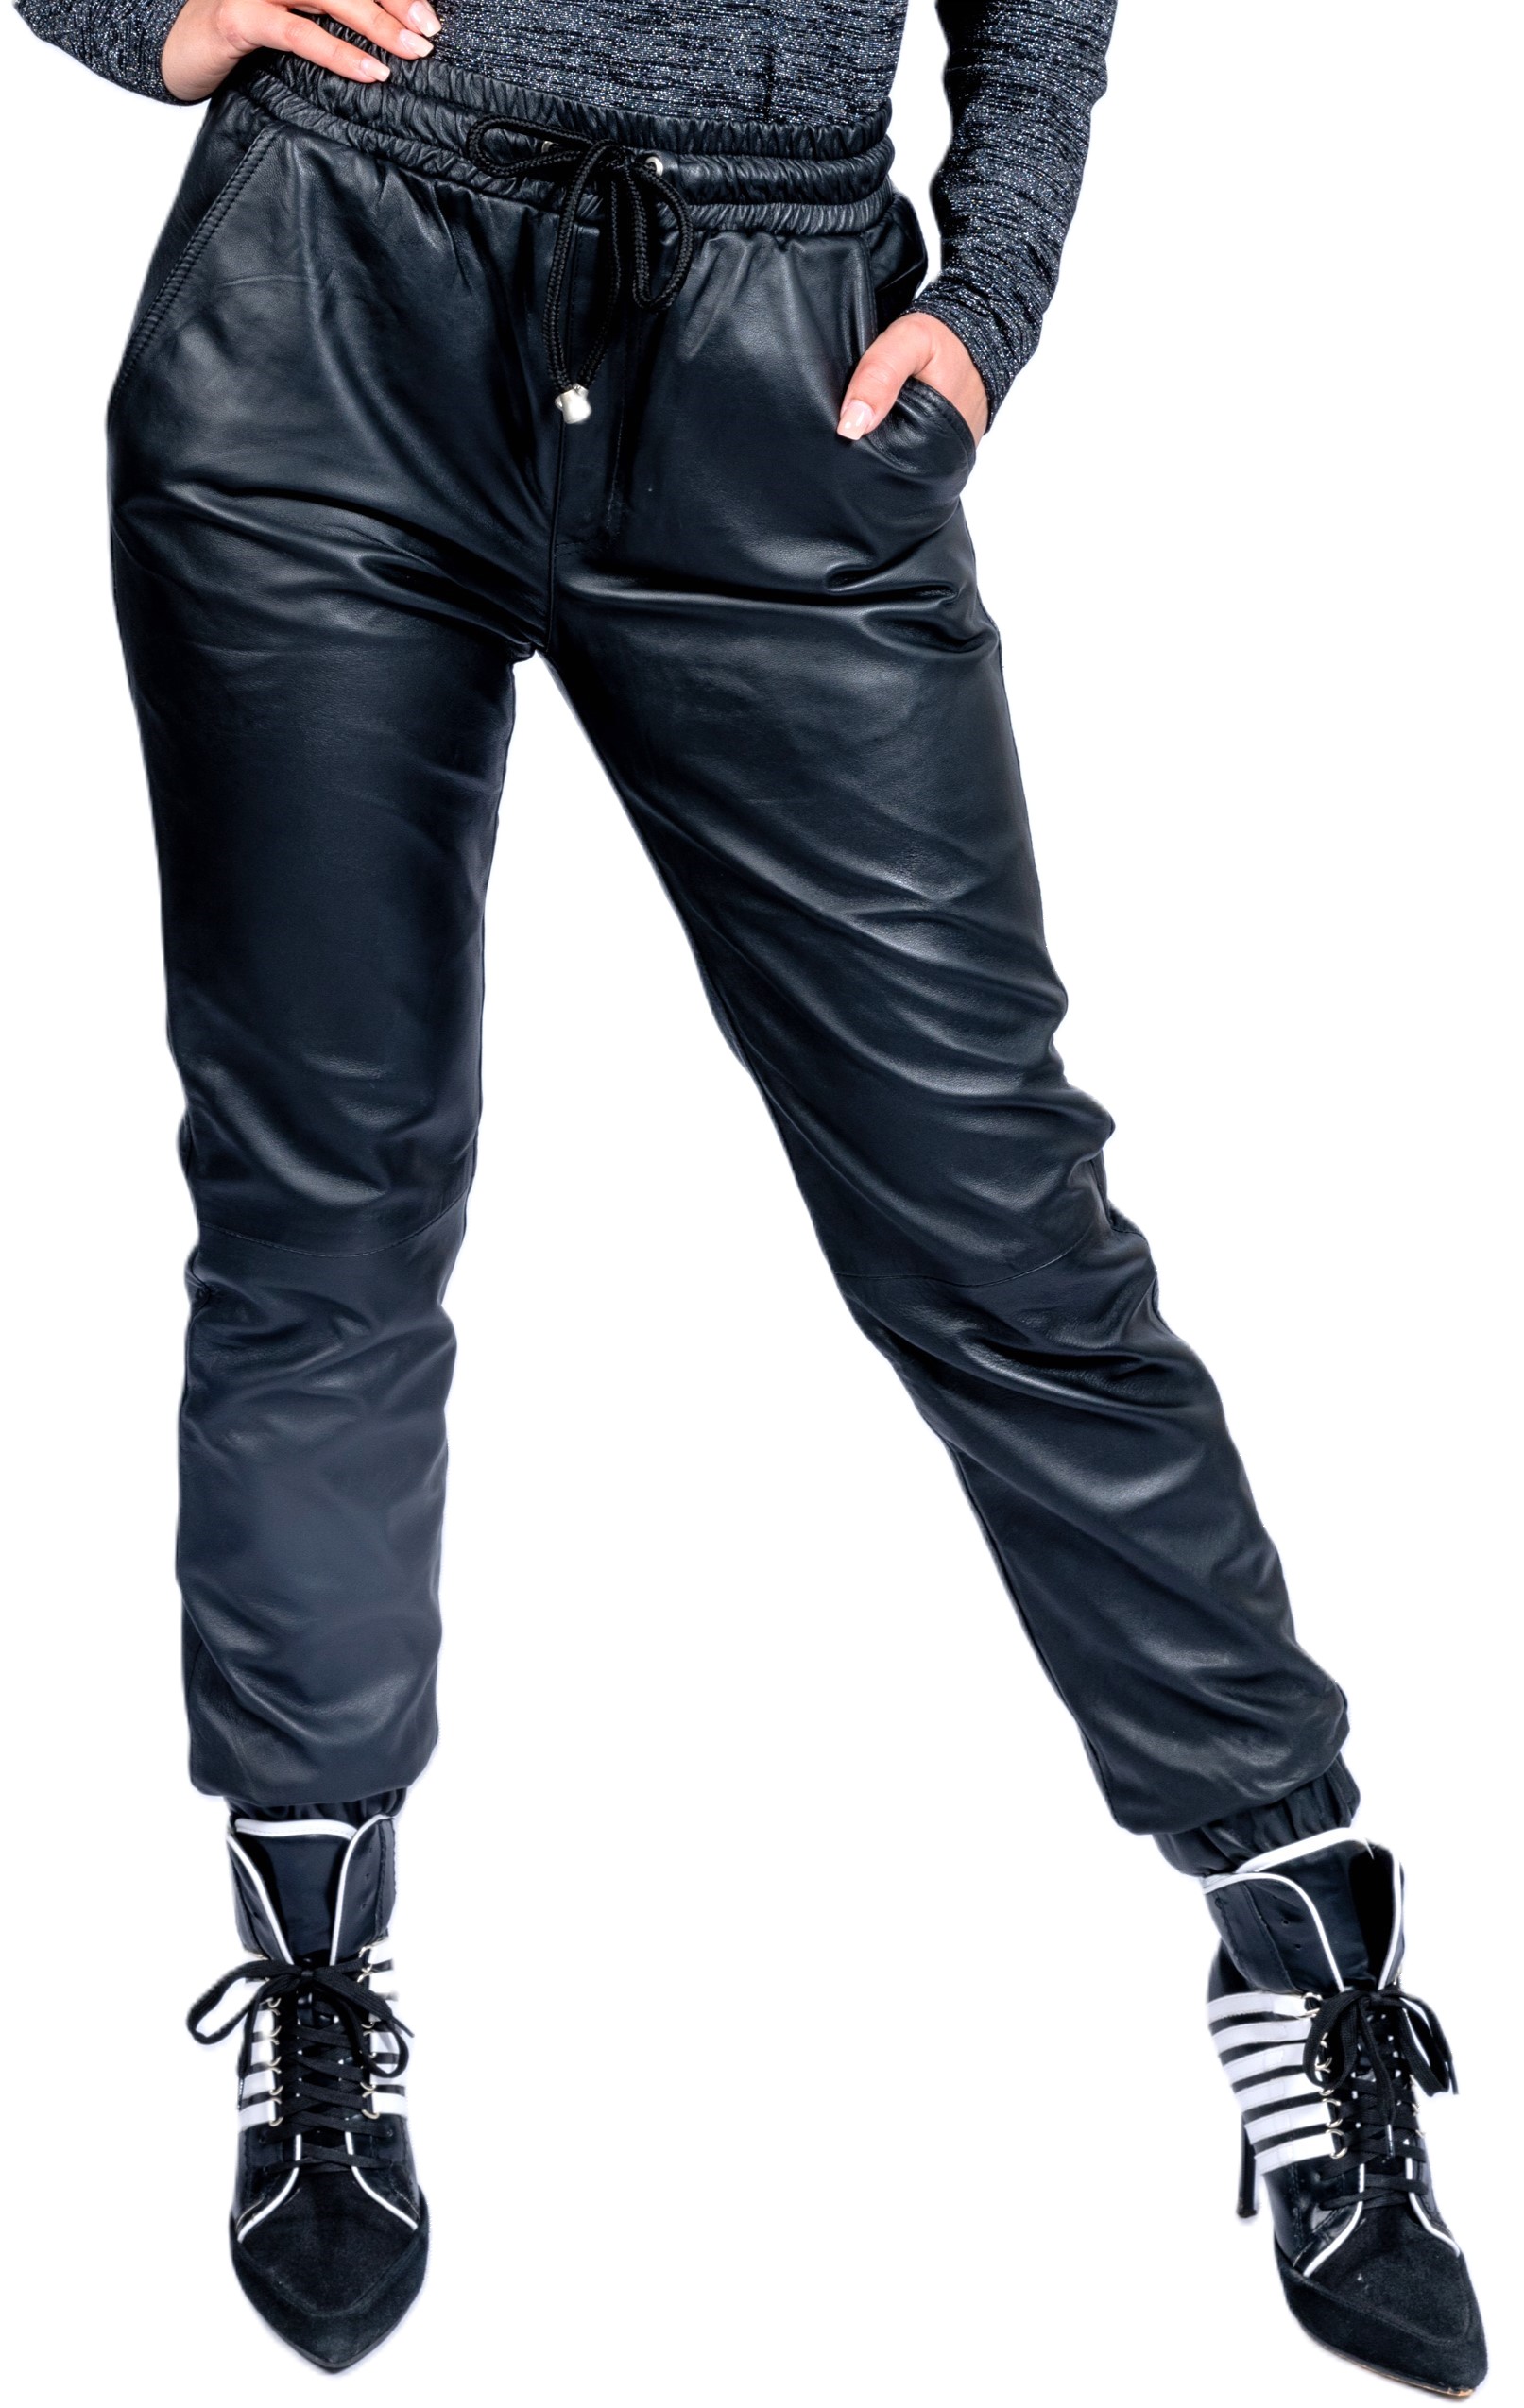 Jogginghose als Lederhose aus ECHT-Leder in schwarz